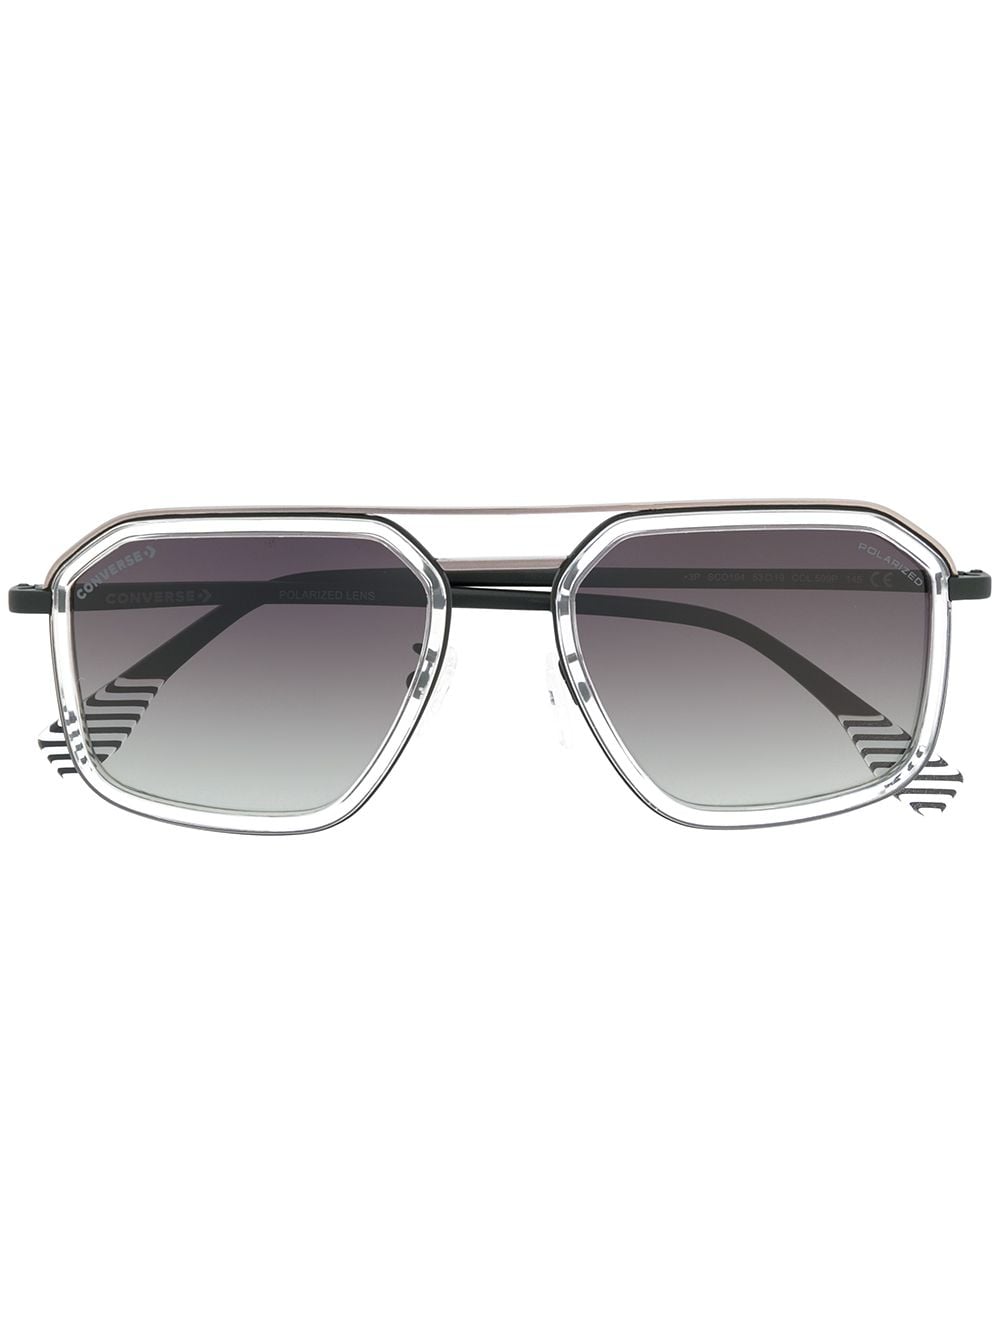 фото Converse футуристические солнцезащитные очки